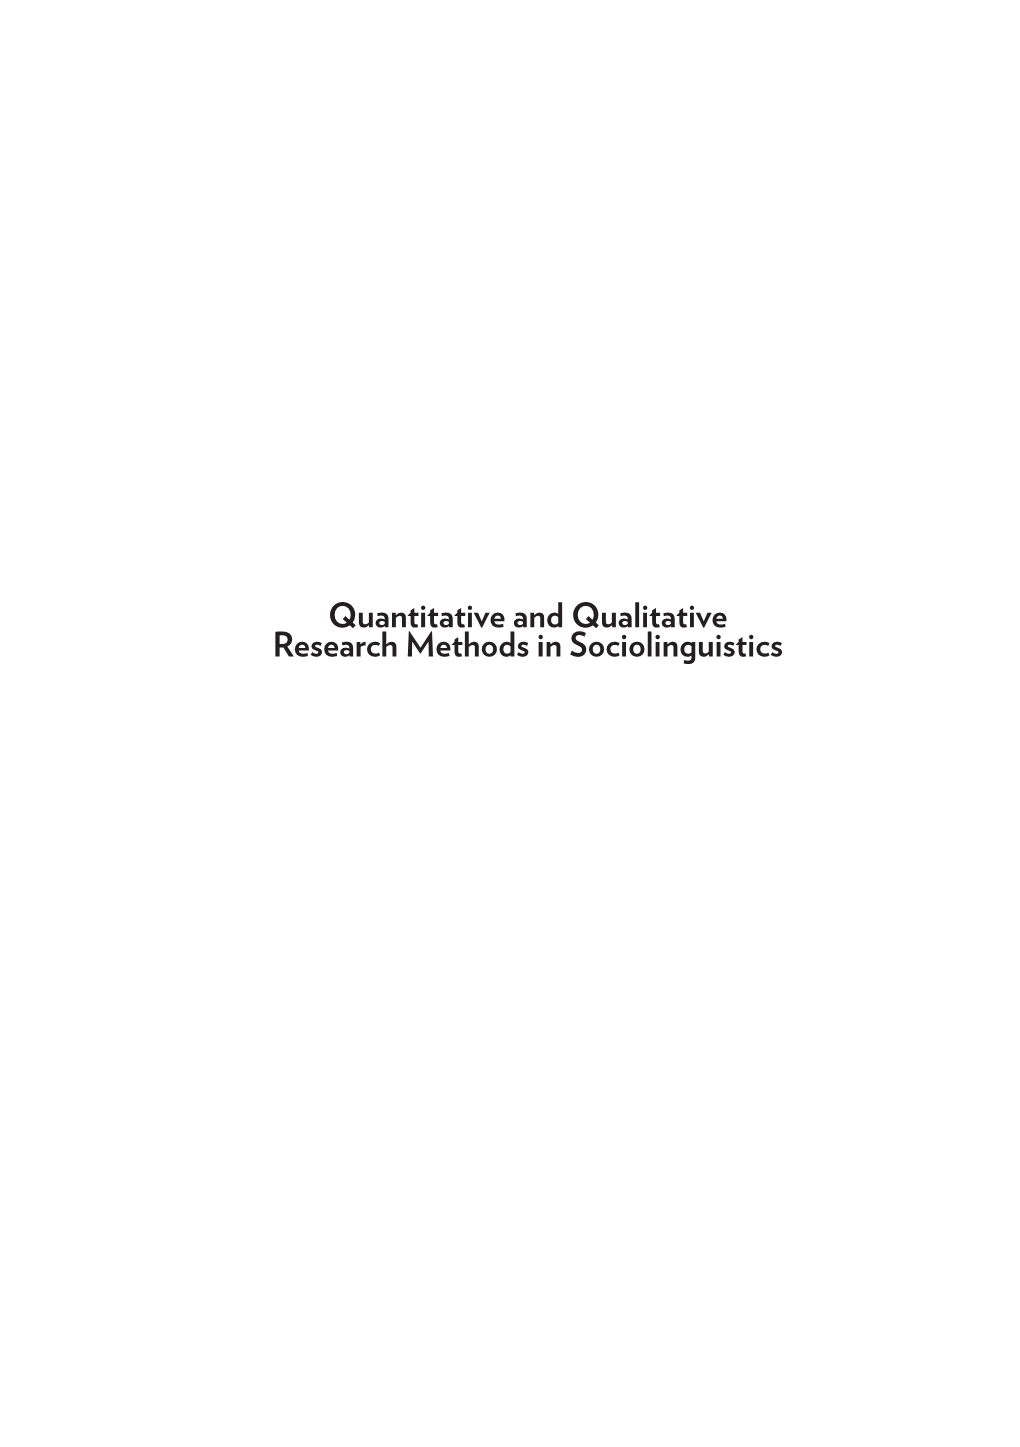 Quantitative and Qualitative Research Methods in Sociolinguistics